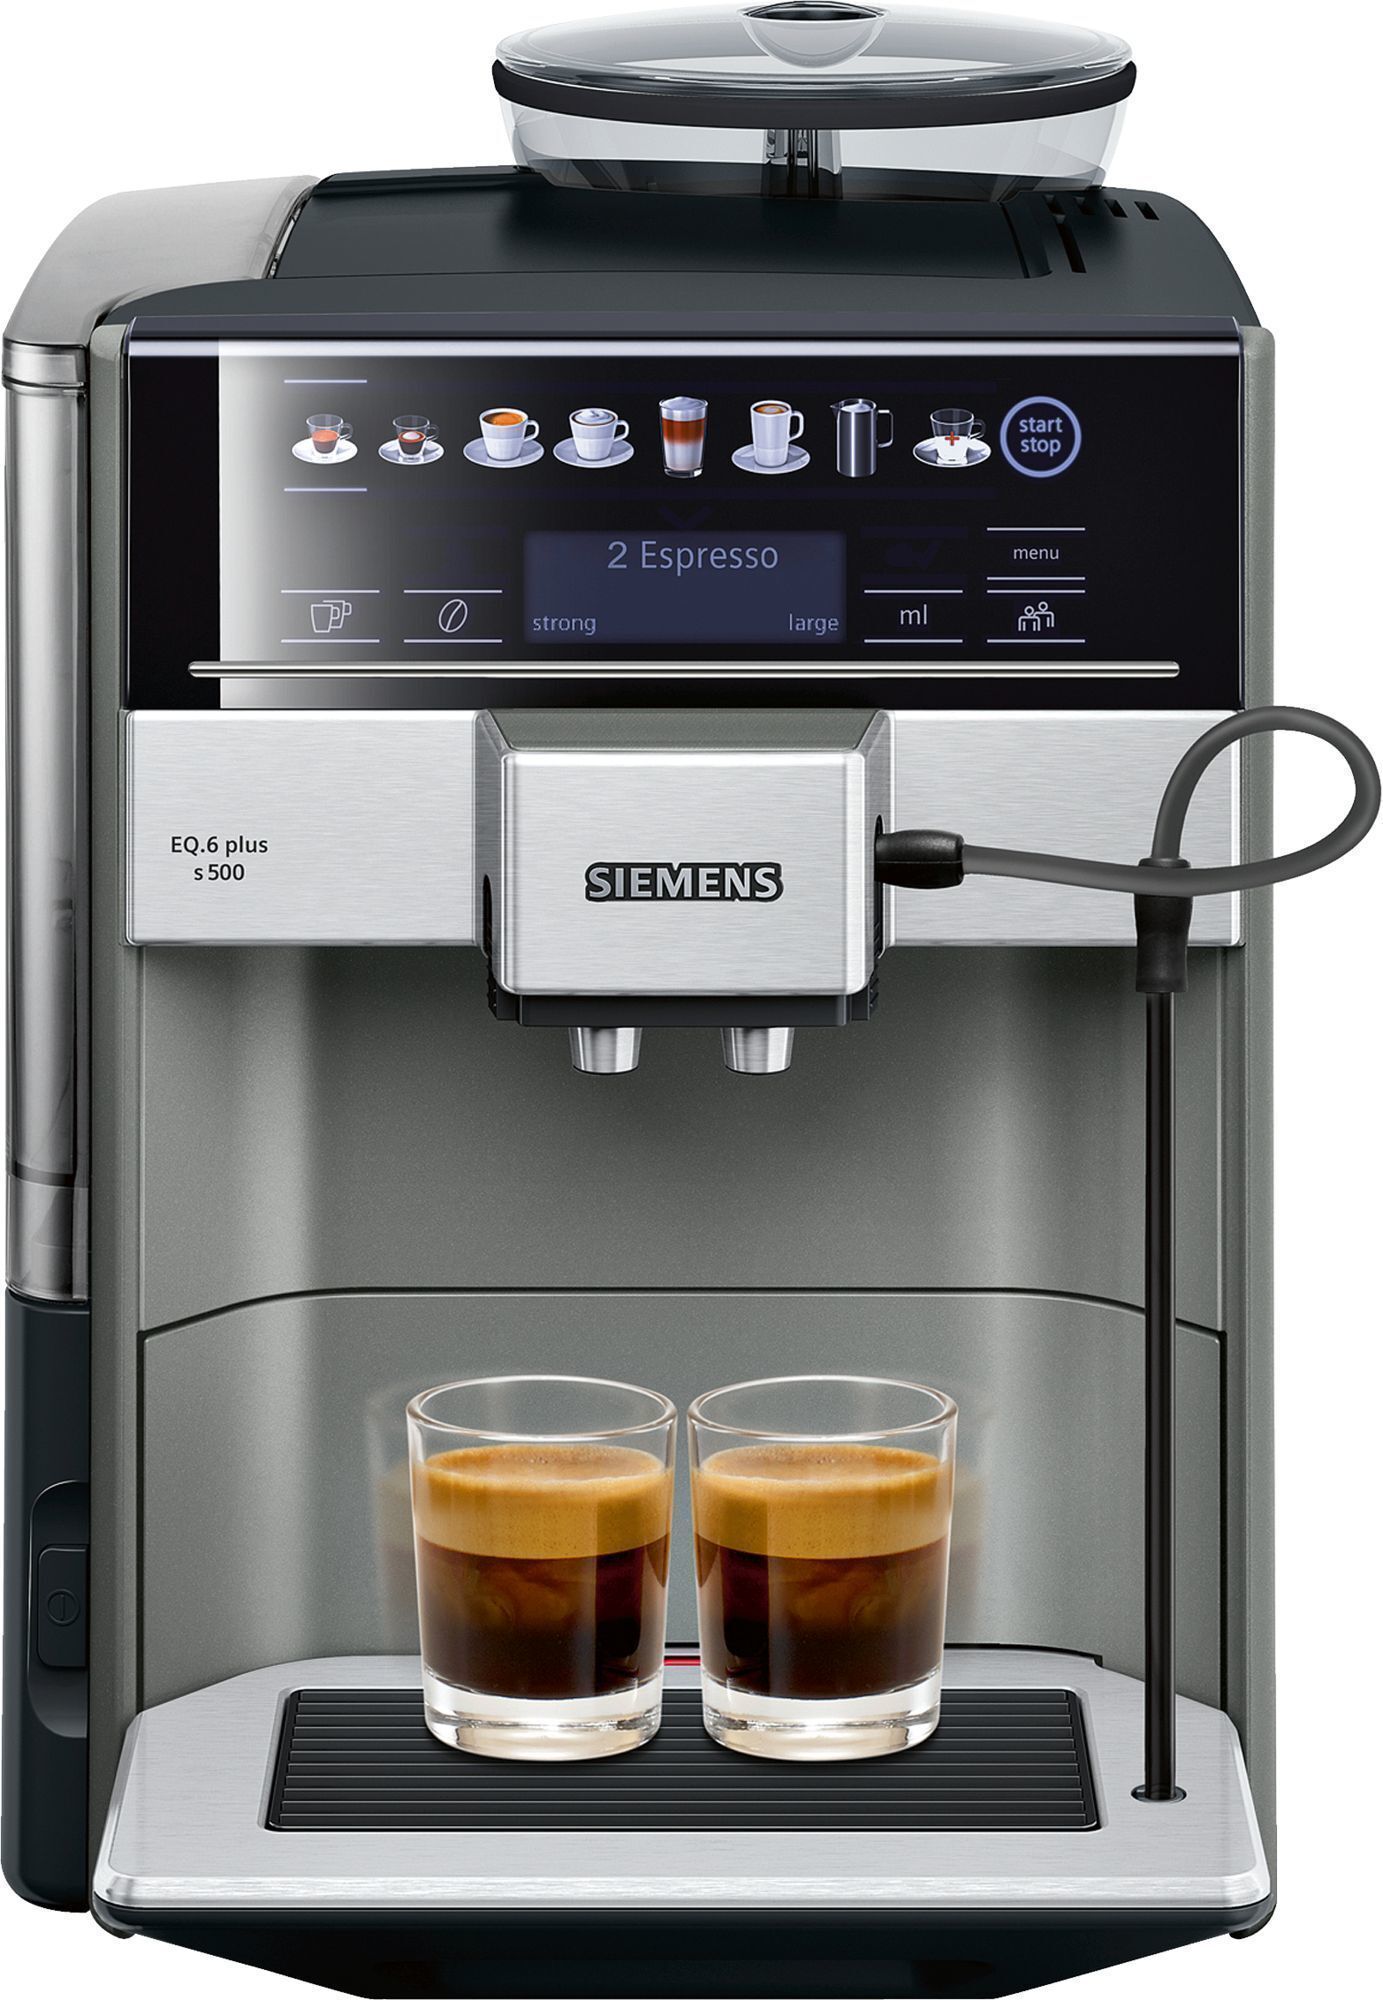 Siemens Espresso EQ.6 Plus s500 TE655203RW